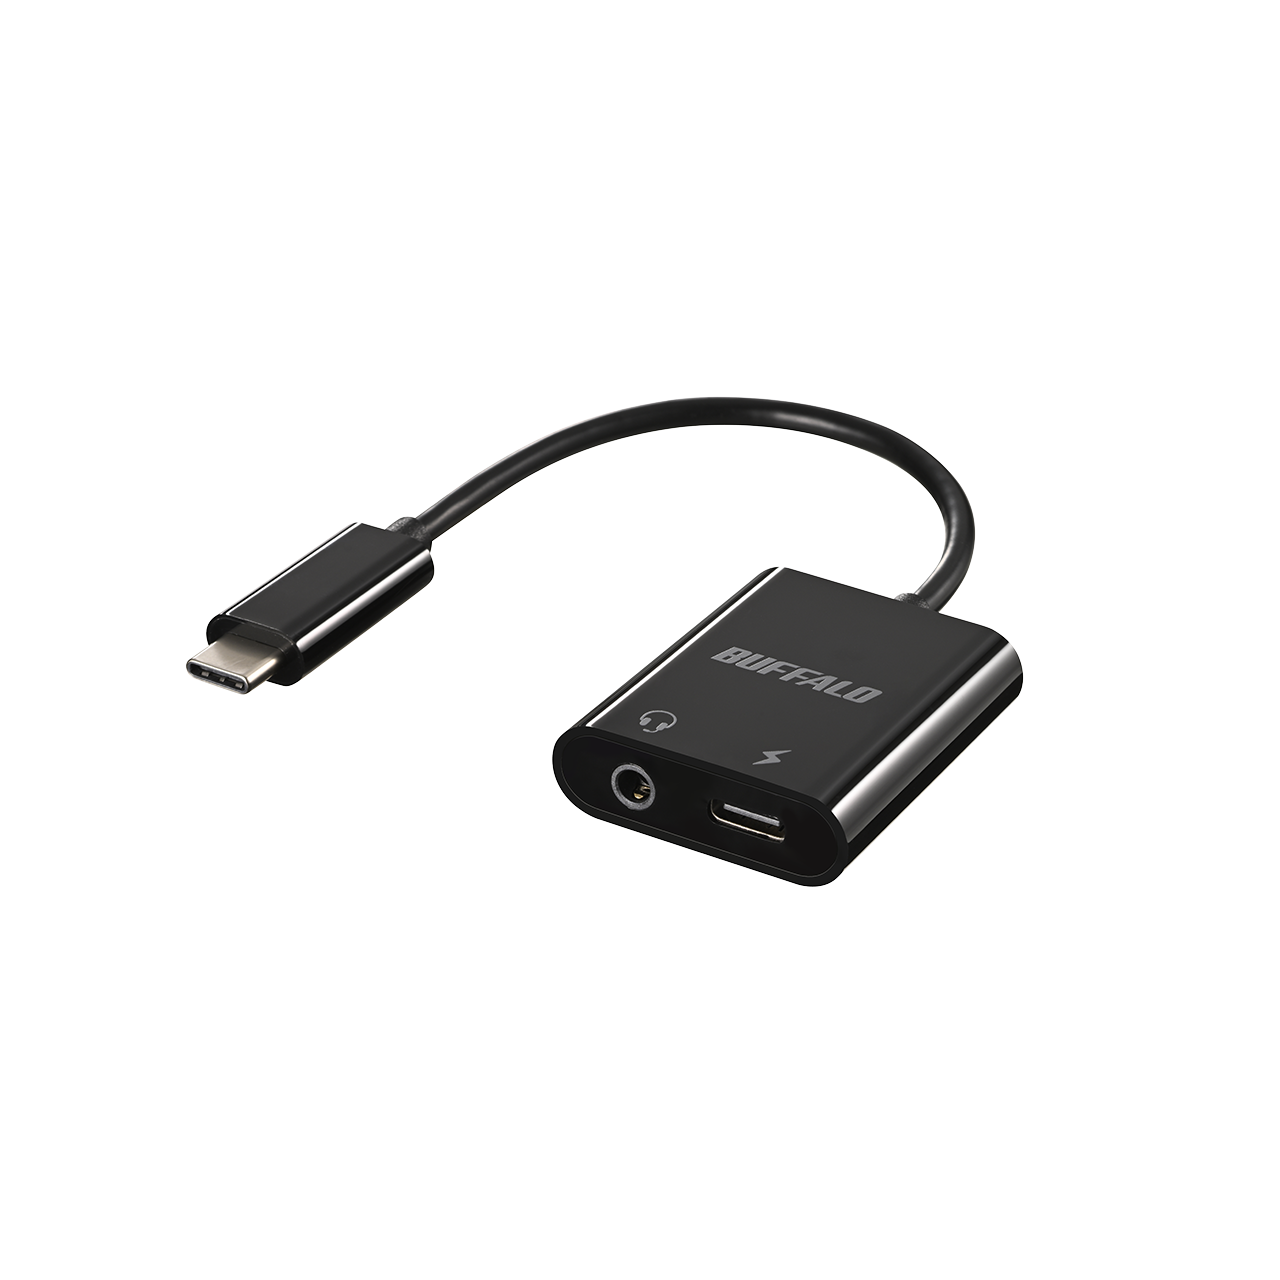 充電しながらイヤホンが使えるオーディオ変換アダプター「BSMPCPD350シリーズ」を7月中旬より発売